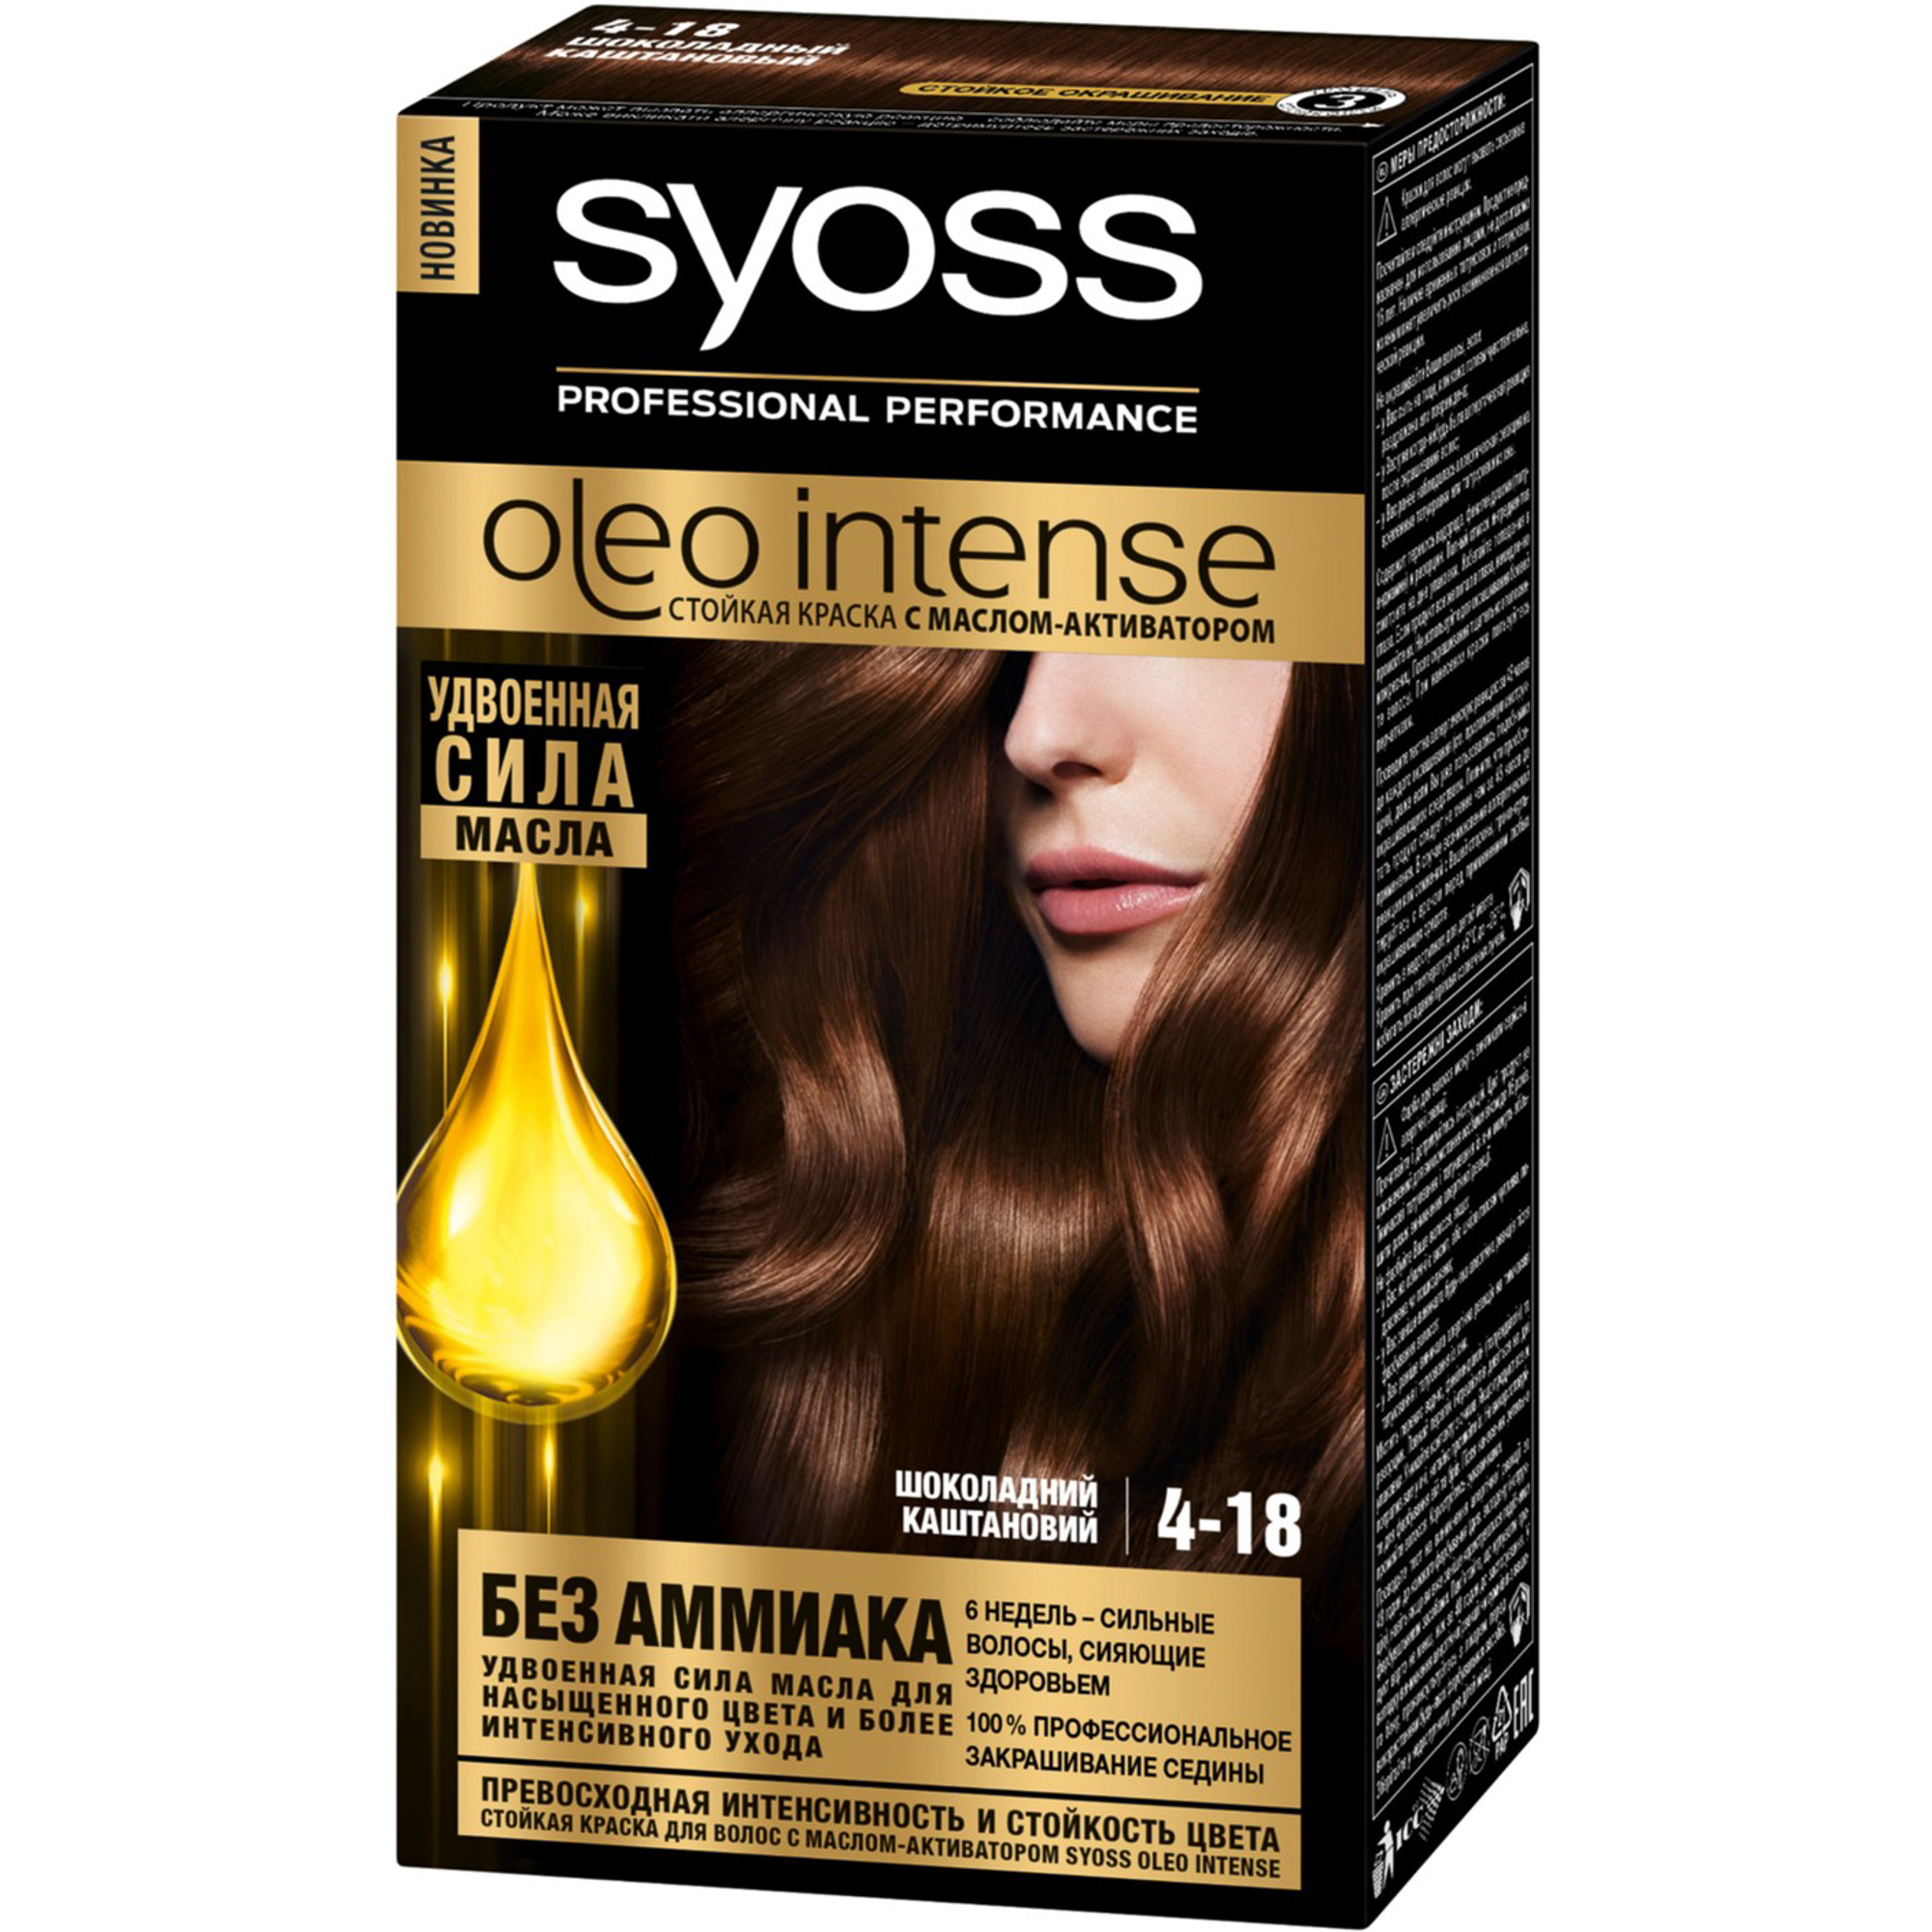 Краска для волос Syoss Oleo Intense 4-18 Шоколадный каштановый syoss краска для волос oleo intense 4 18 шоколадный каштановый 115 мл